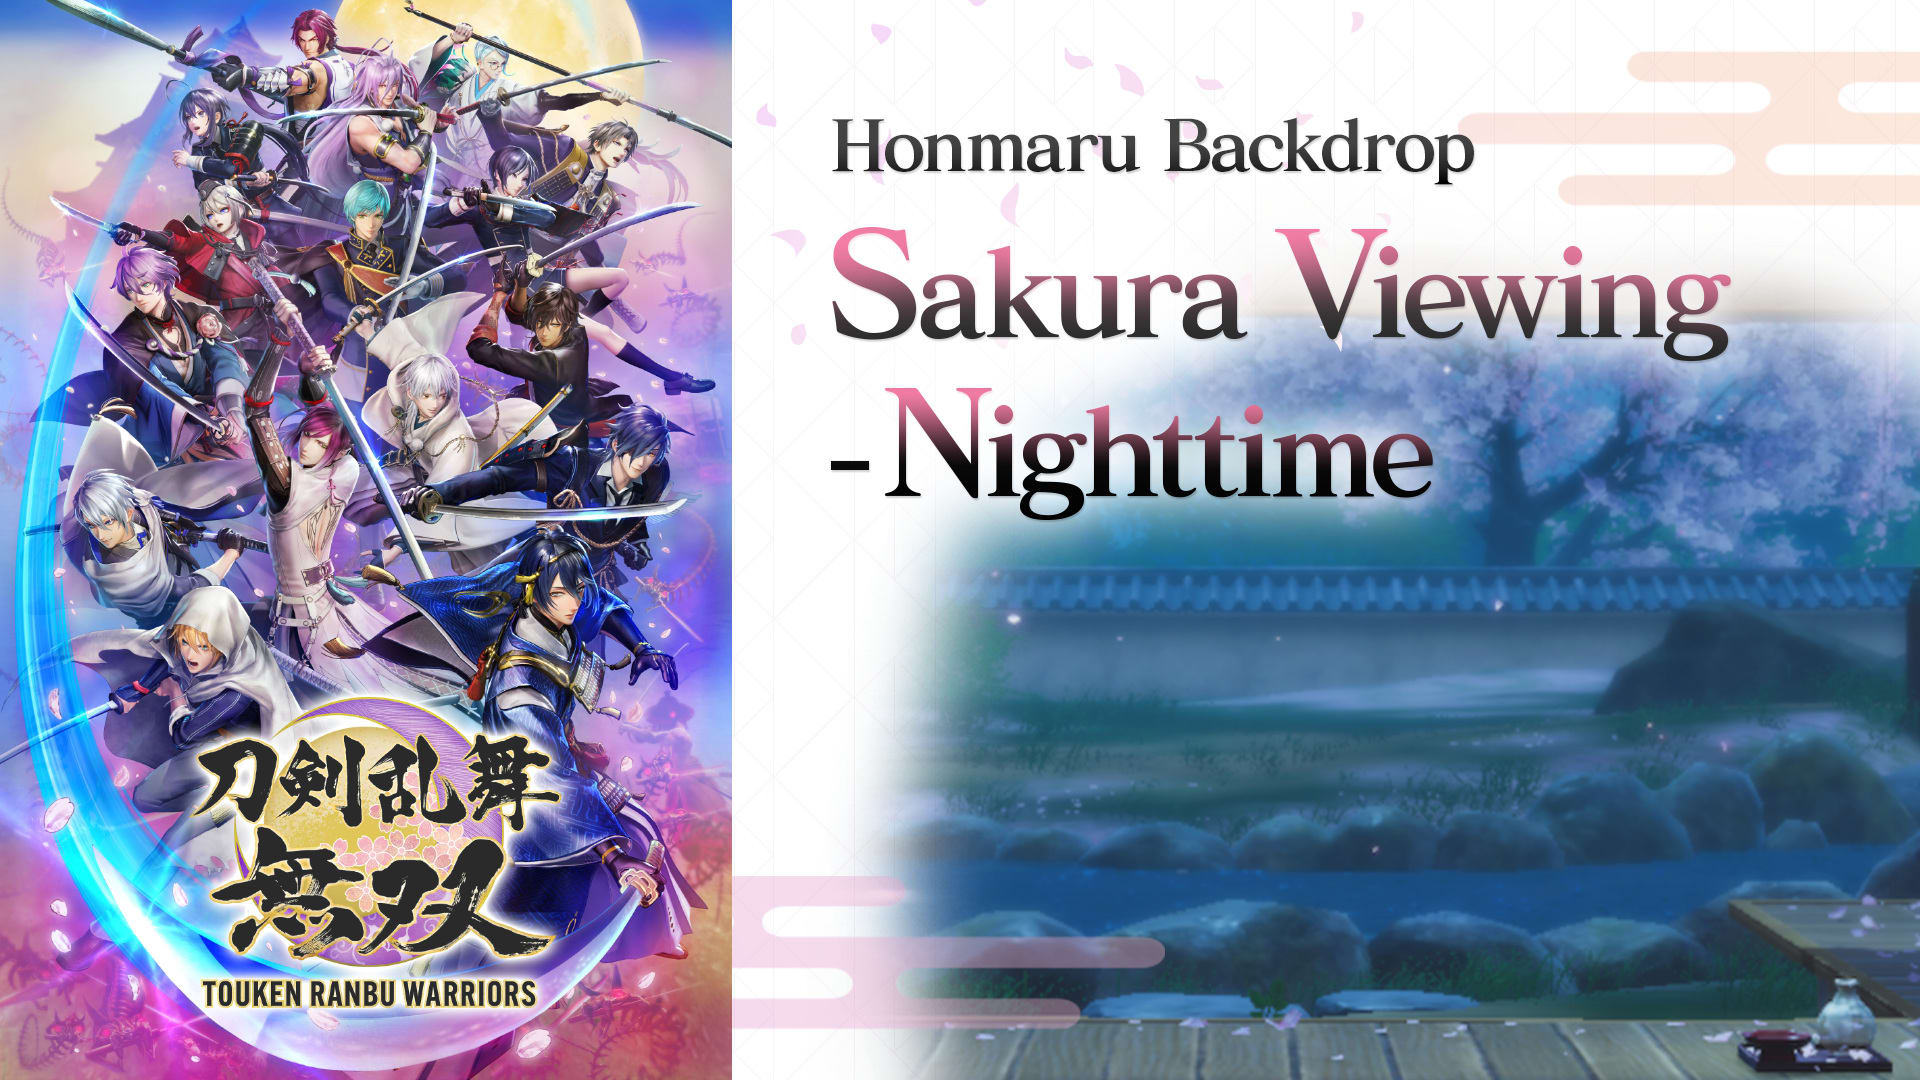 Honmaru Backdrop "Sakura Viewing - Nighttime"